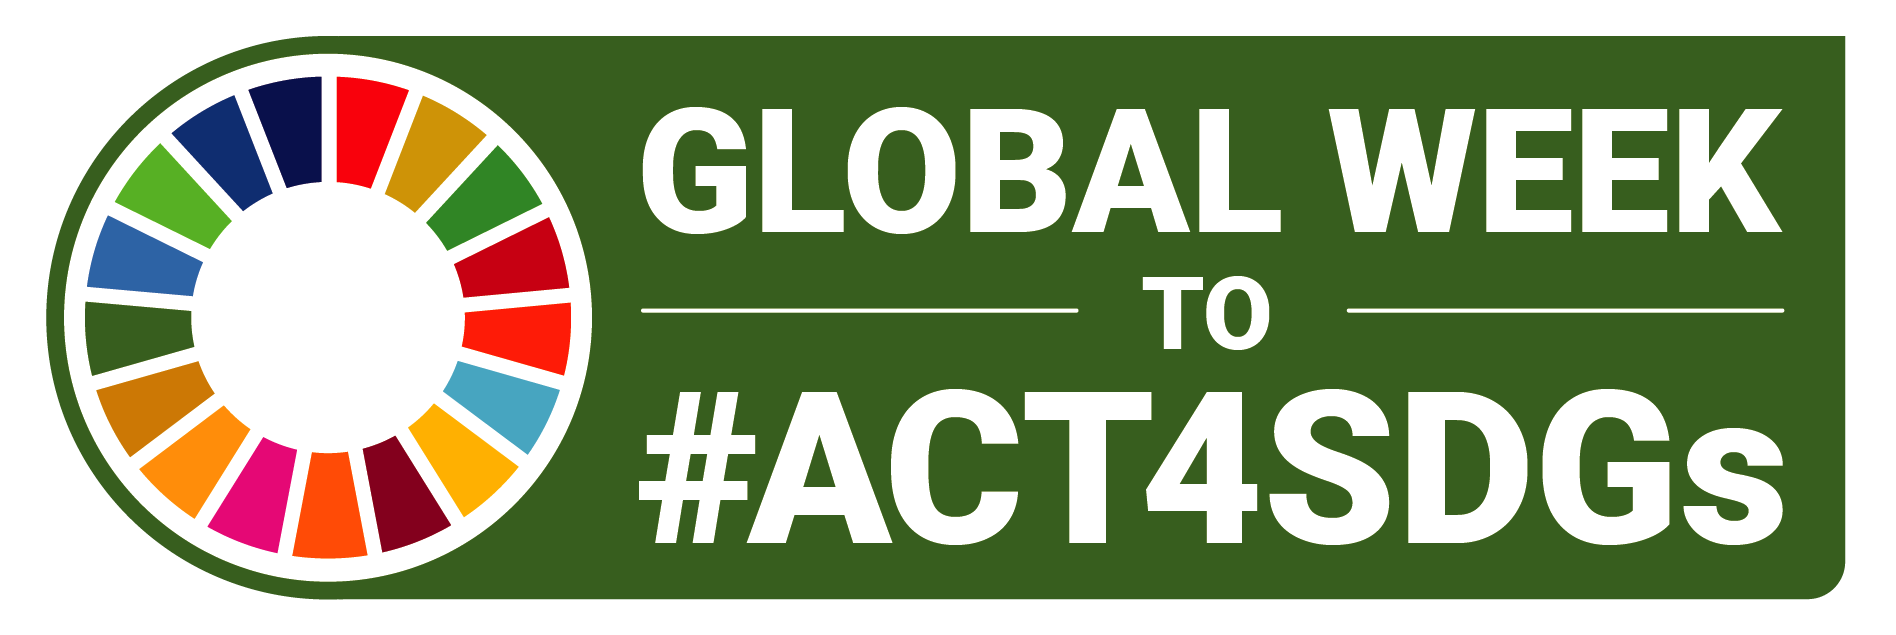 Global_Week_to_Act4SDGs_logo